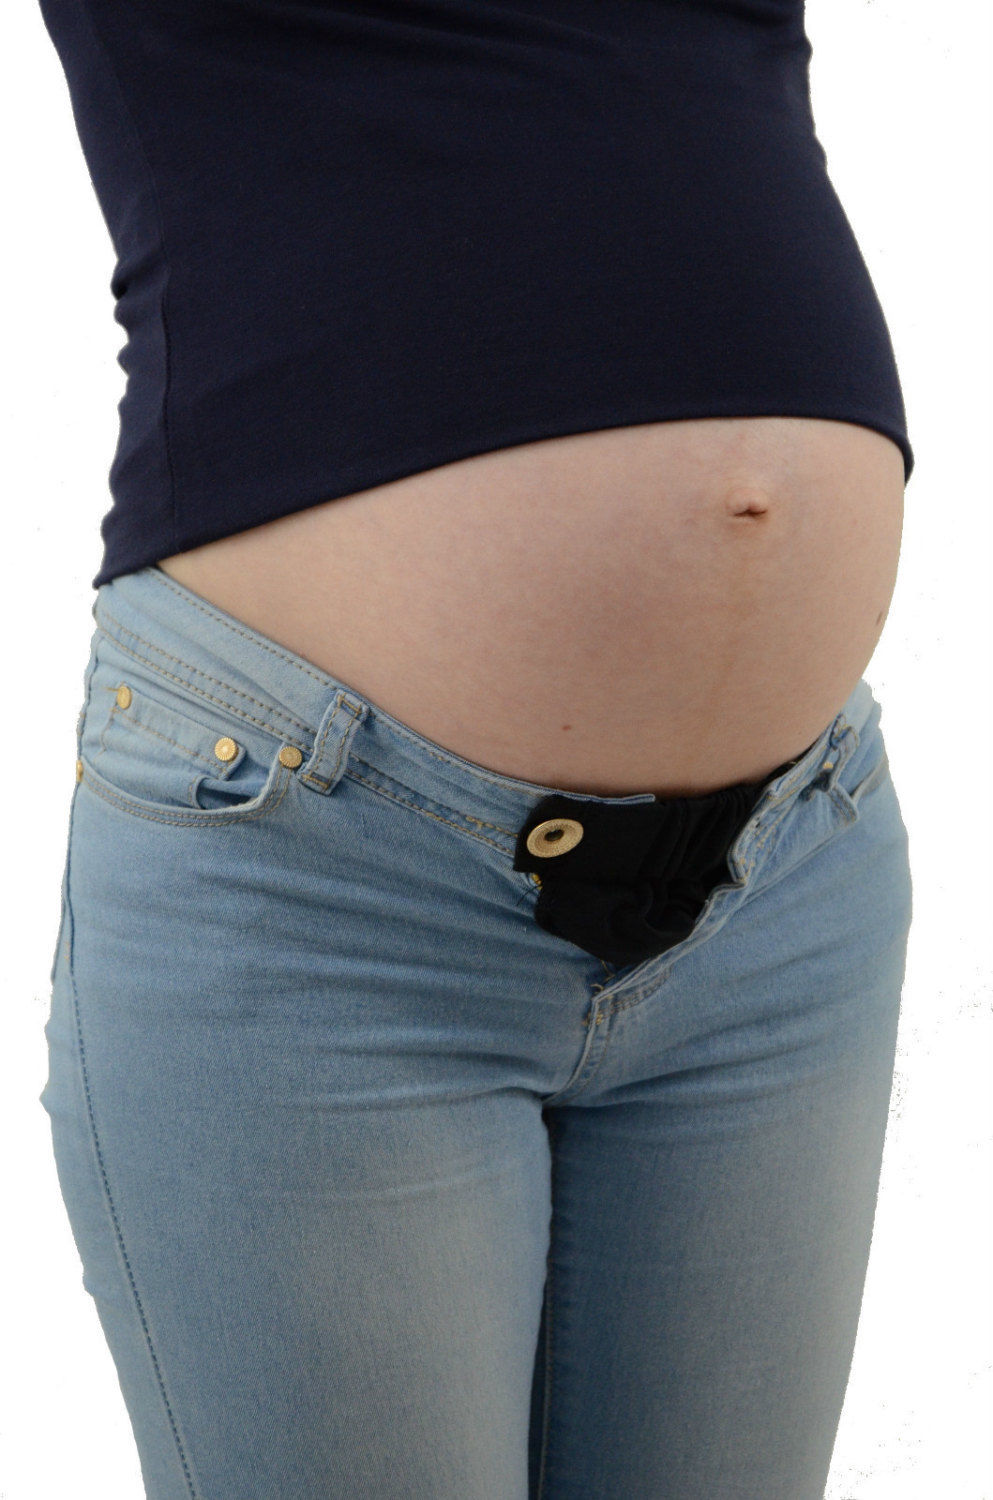 3pcs pantalon de grossesse extension jupe extension pantalon de maternité